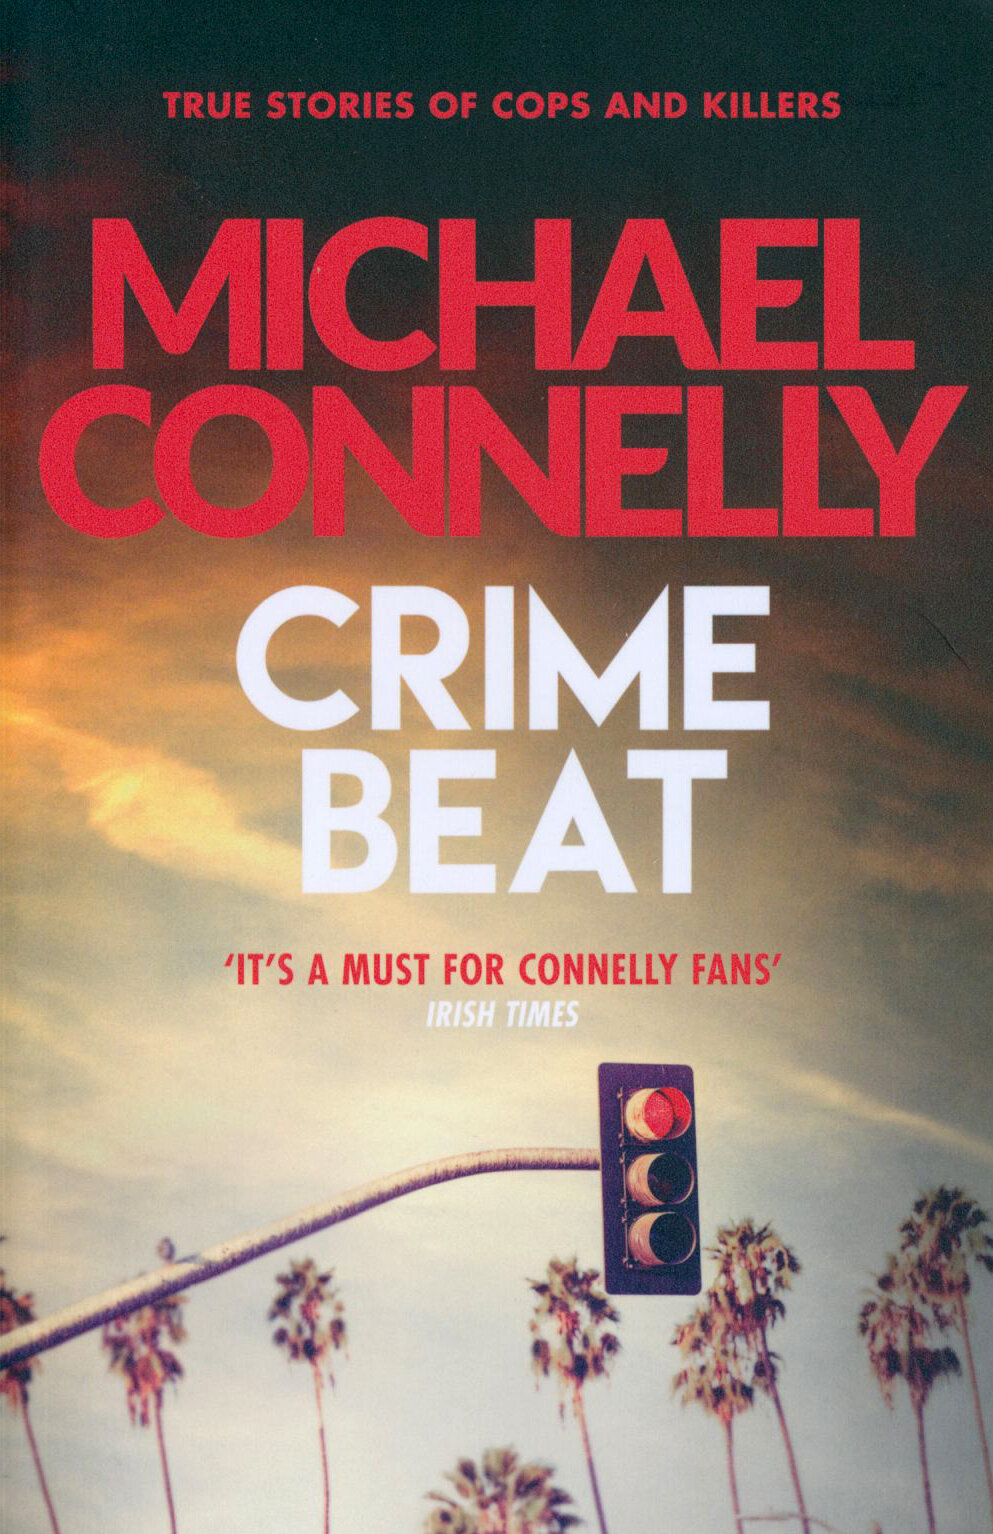 Crime Beat (Коннелли Майкл) - фото №1